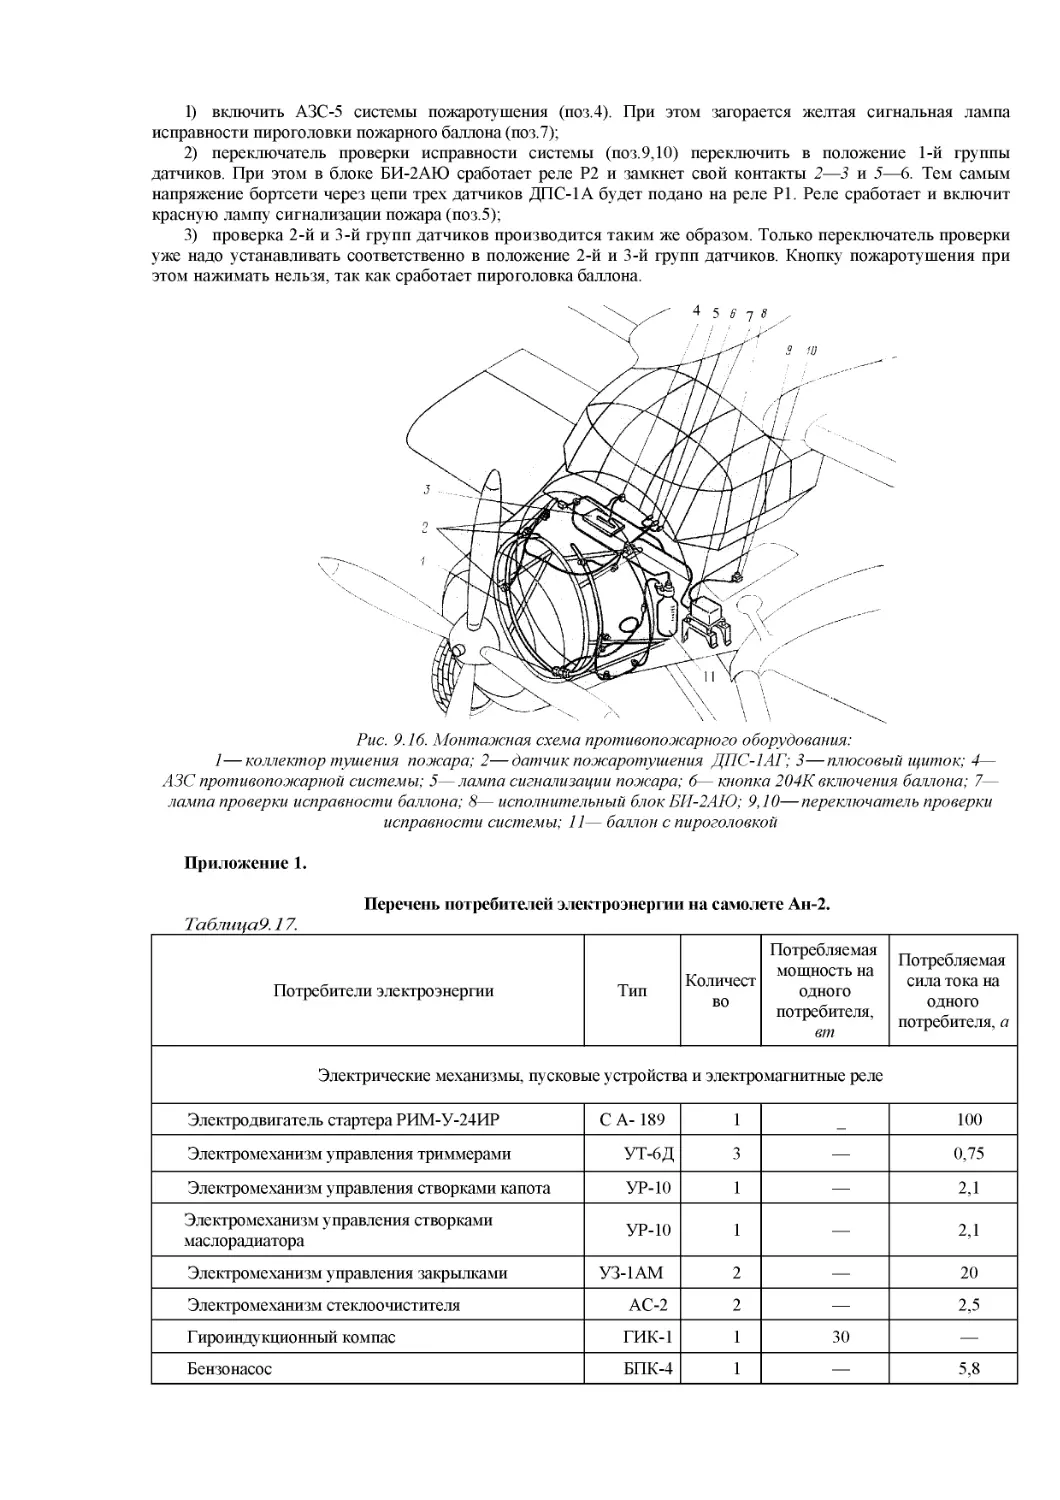 Приложения
Перечень потребителей электроэнергии на самолете Ан-2